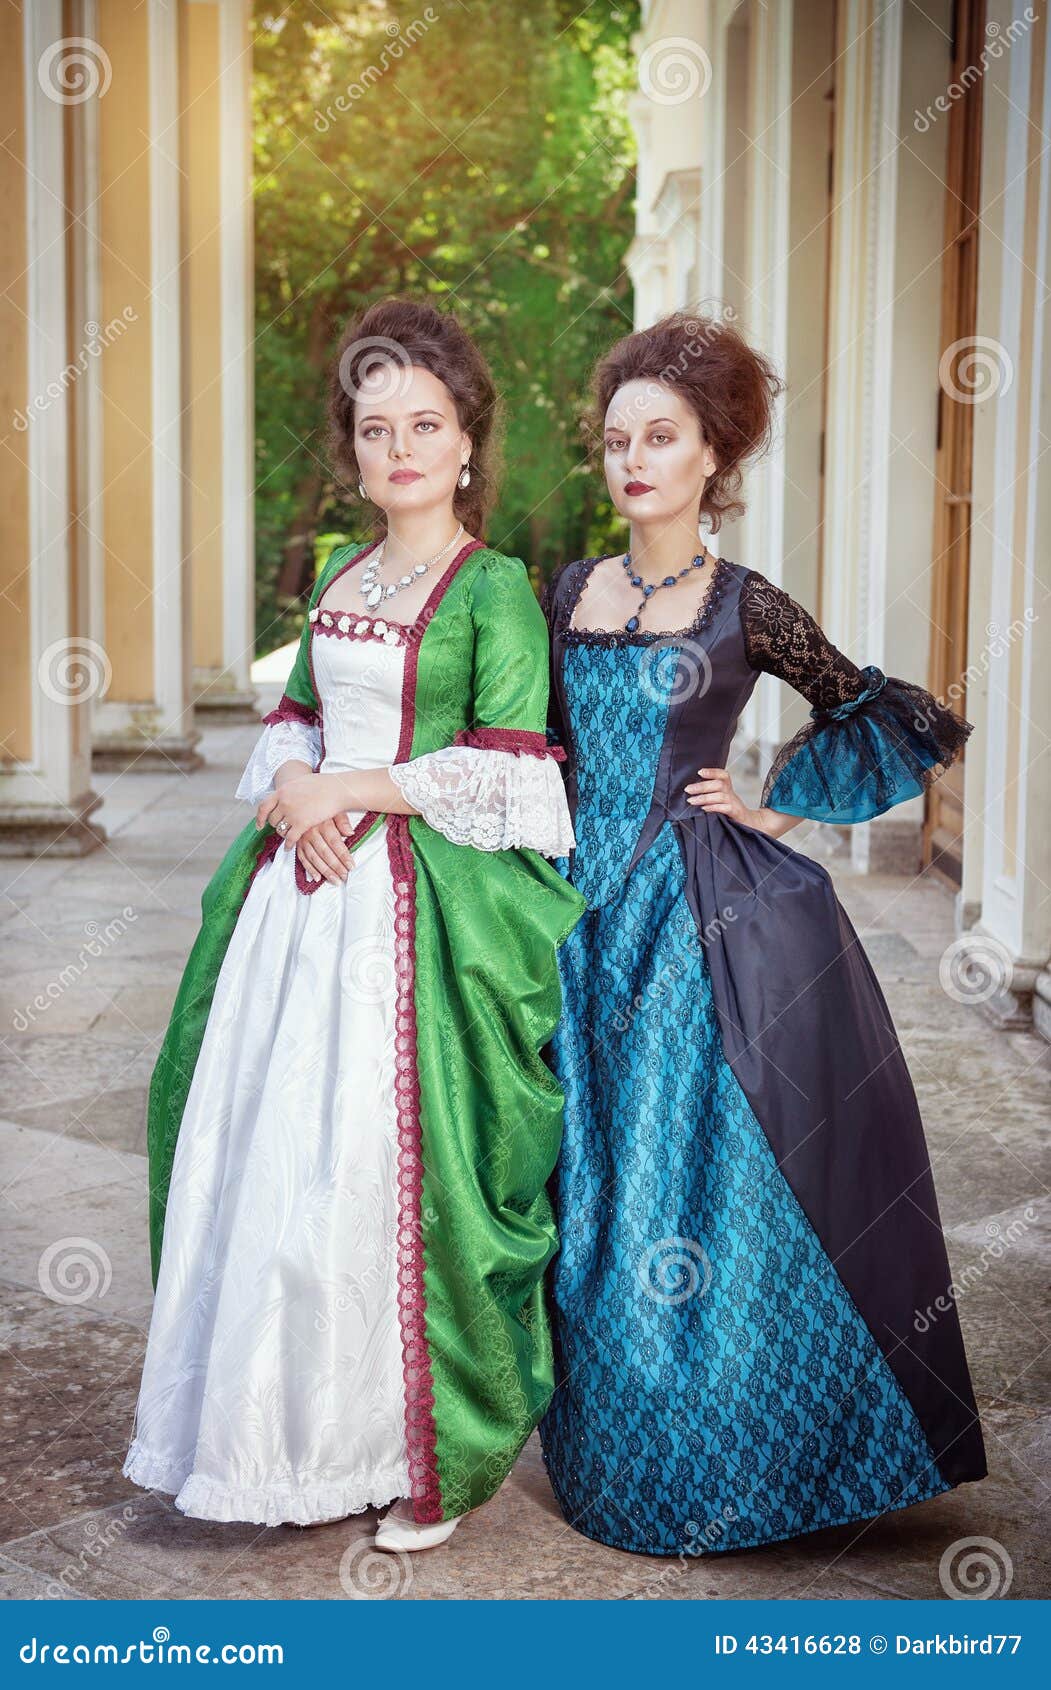 medieval dresses for women